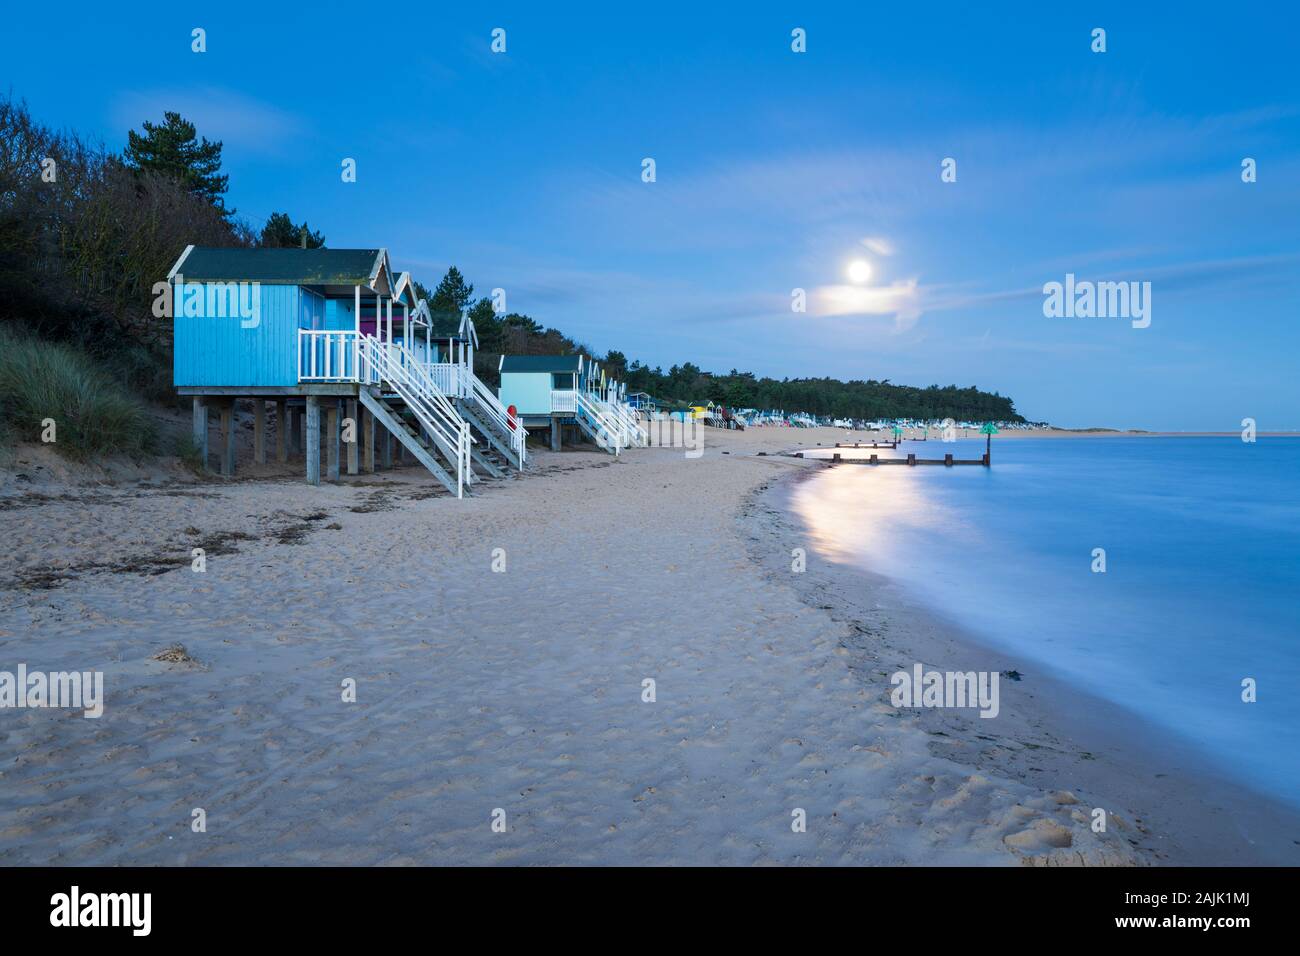 Pleine lune sur les cabanes de plage de Wells Next the sea beach, Wells-next-the-Sea, Norfolk, Angleterre, Royaume-Uni, Europe Banque D'Images